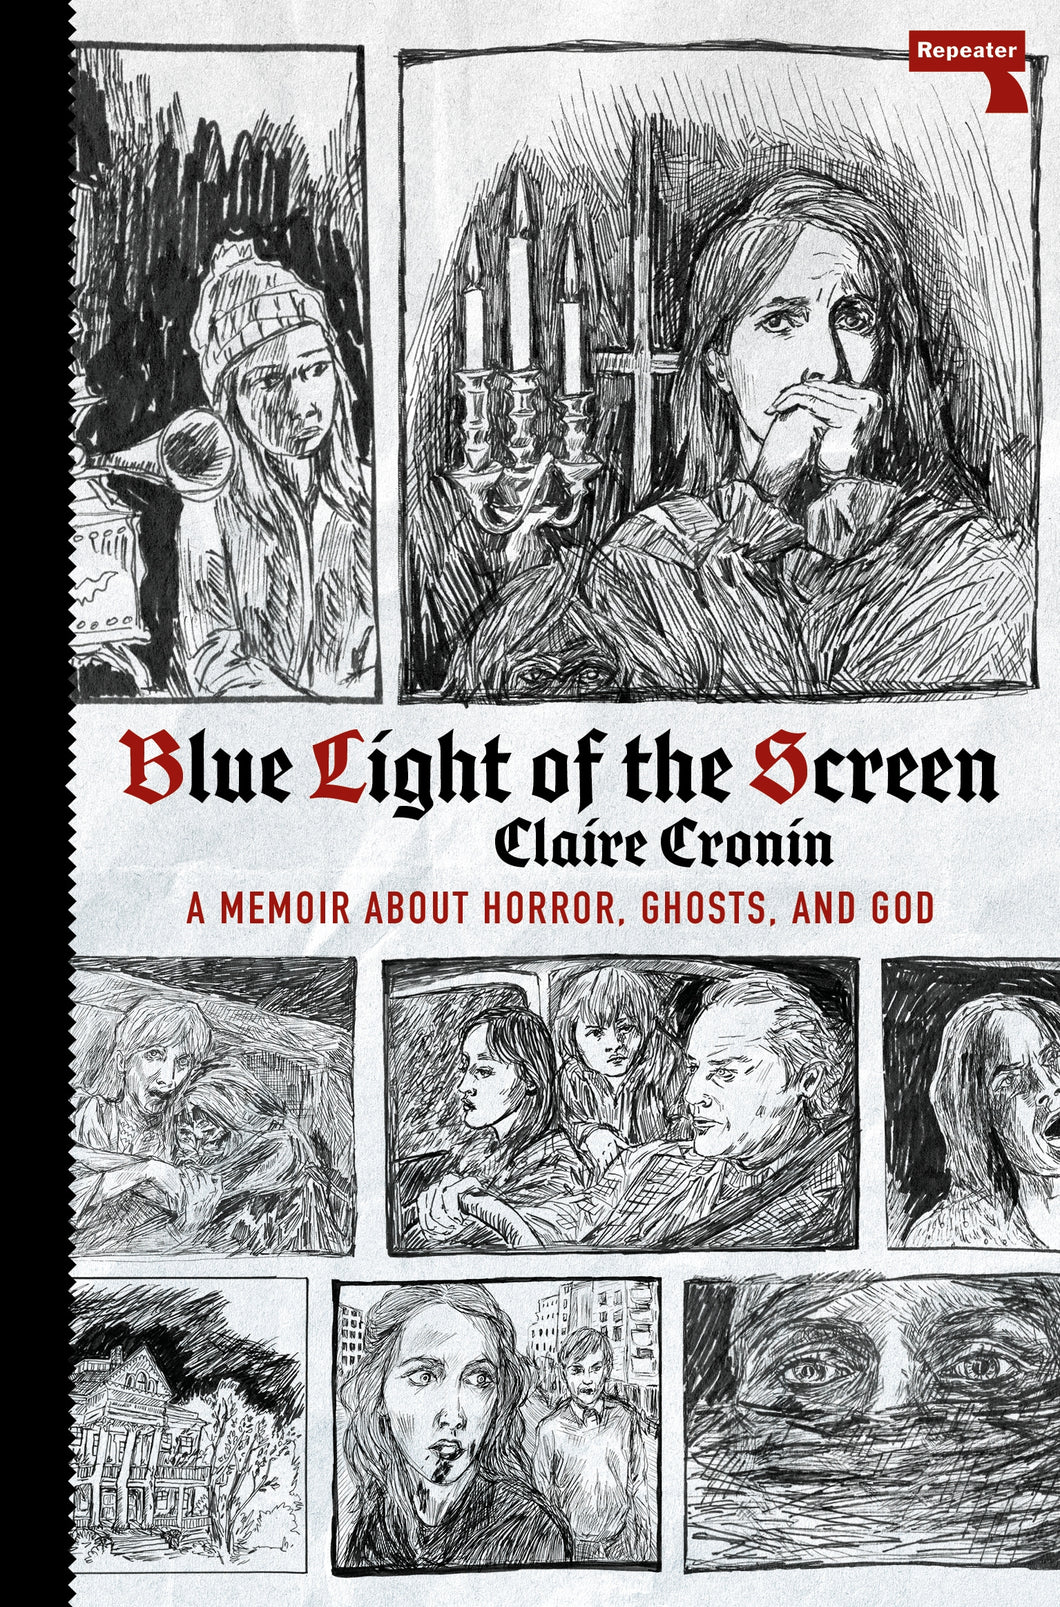 Blue Light of the Screen : On Horror, Ghosts, and God ร้านหนังสือและสิ่งของ เป็นร้านหนังสือภาษาอังกฤษหายาก และร้านกาแฟ หรือ บุ๊คคาเฟ่ ตั้งอยู่สุขุมวิท กรุงเทพ